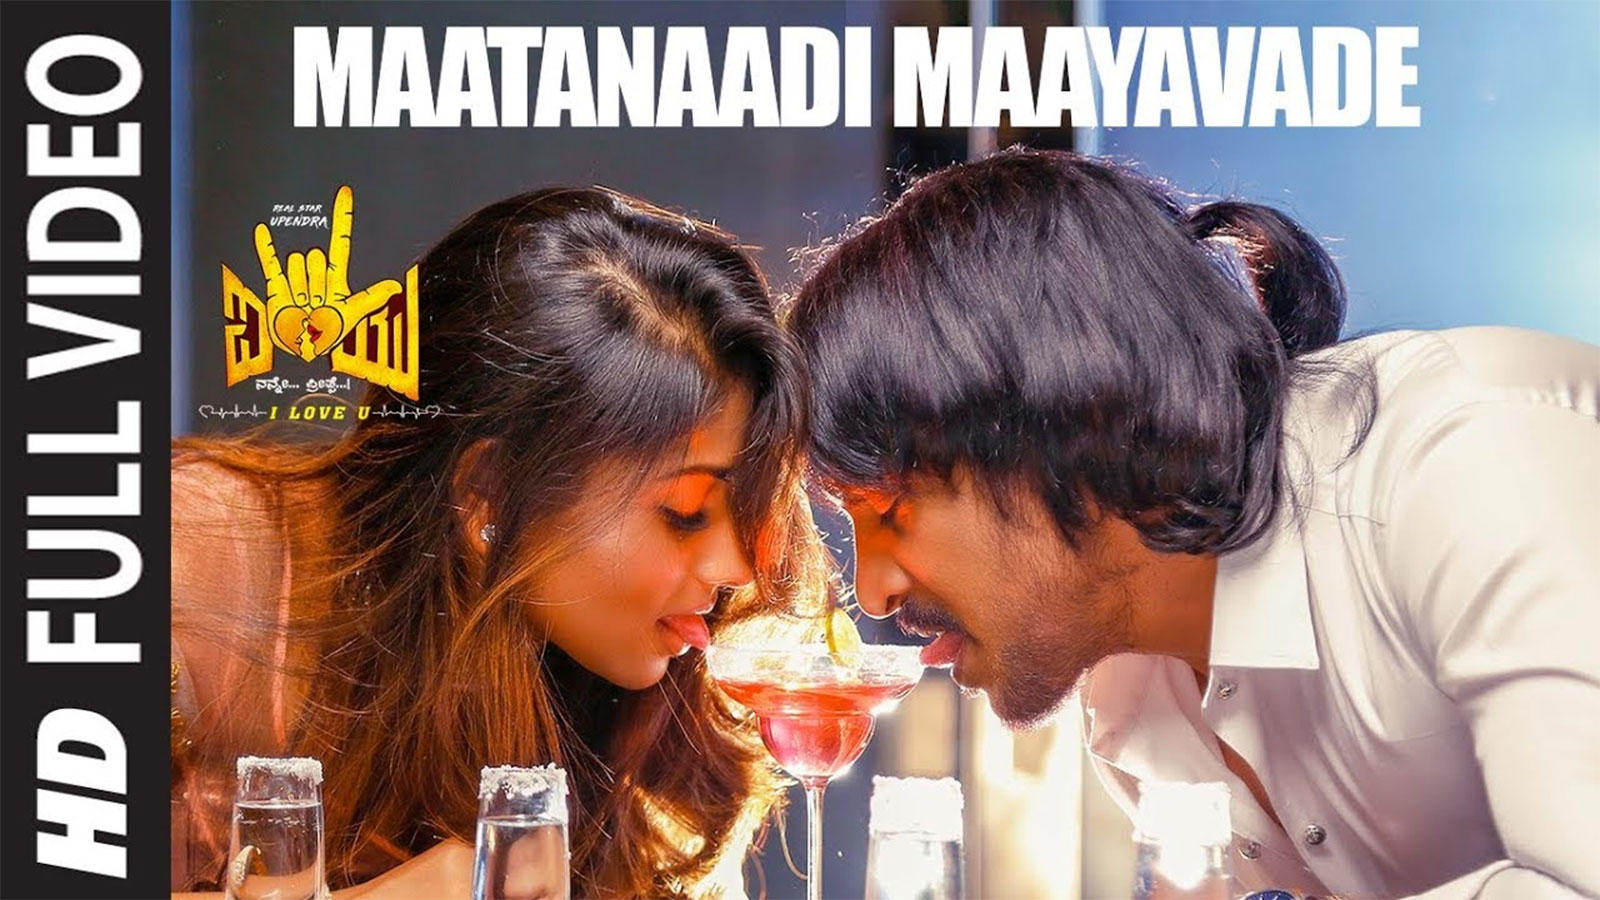 I Love You Song Maatanaadi Maayavade Kannada Video Songs Times Of India